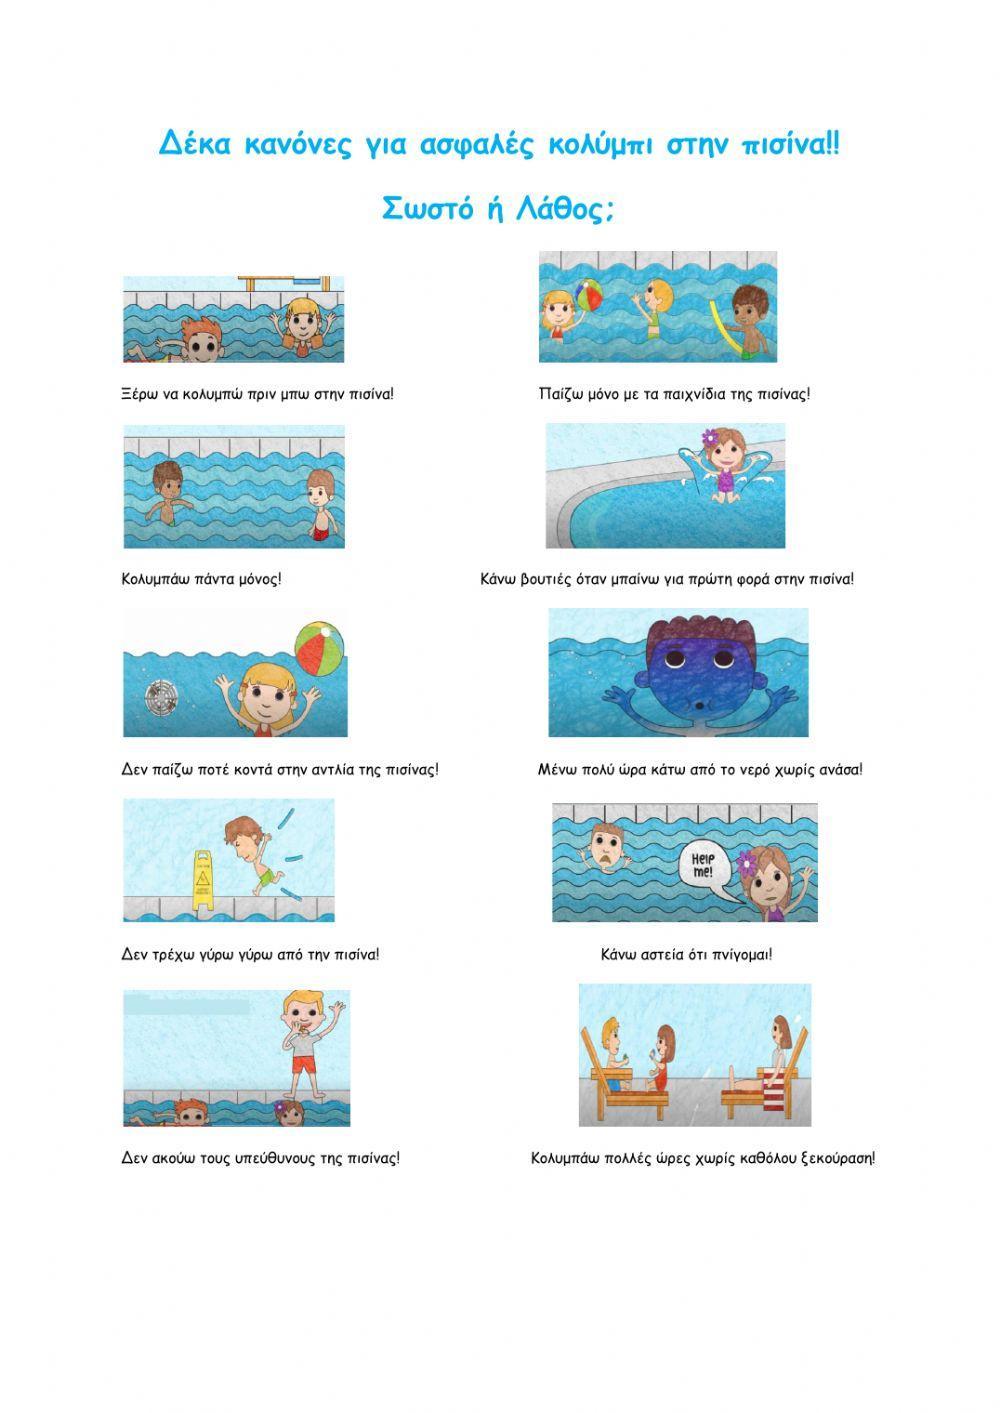 Δέκα κανόνες για ασφαλές κολύμπι στην πισίνα!